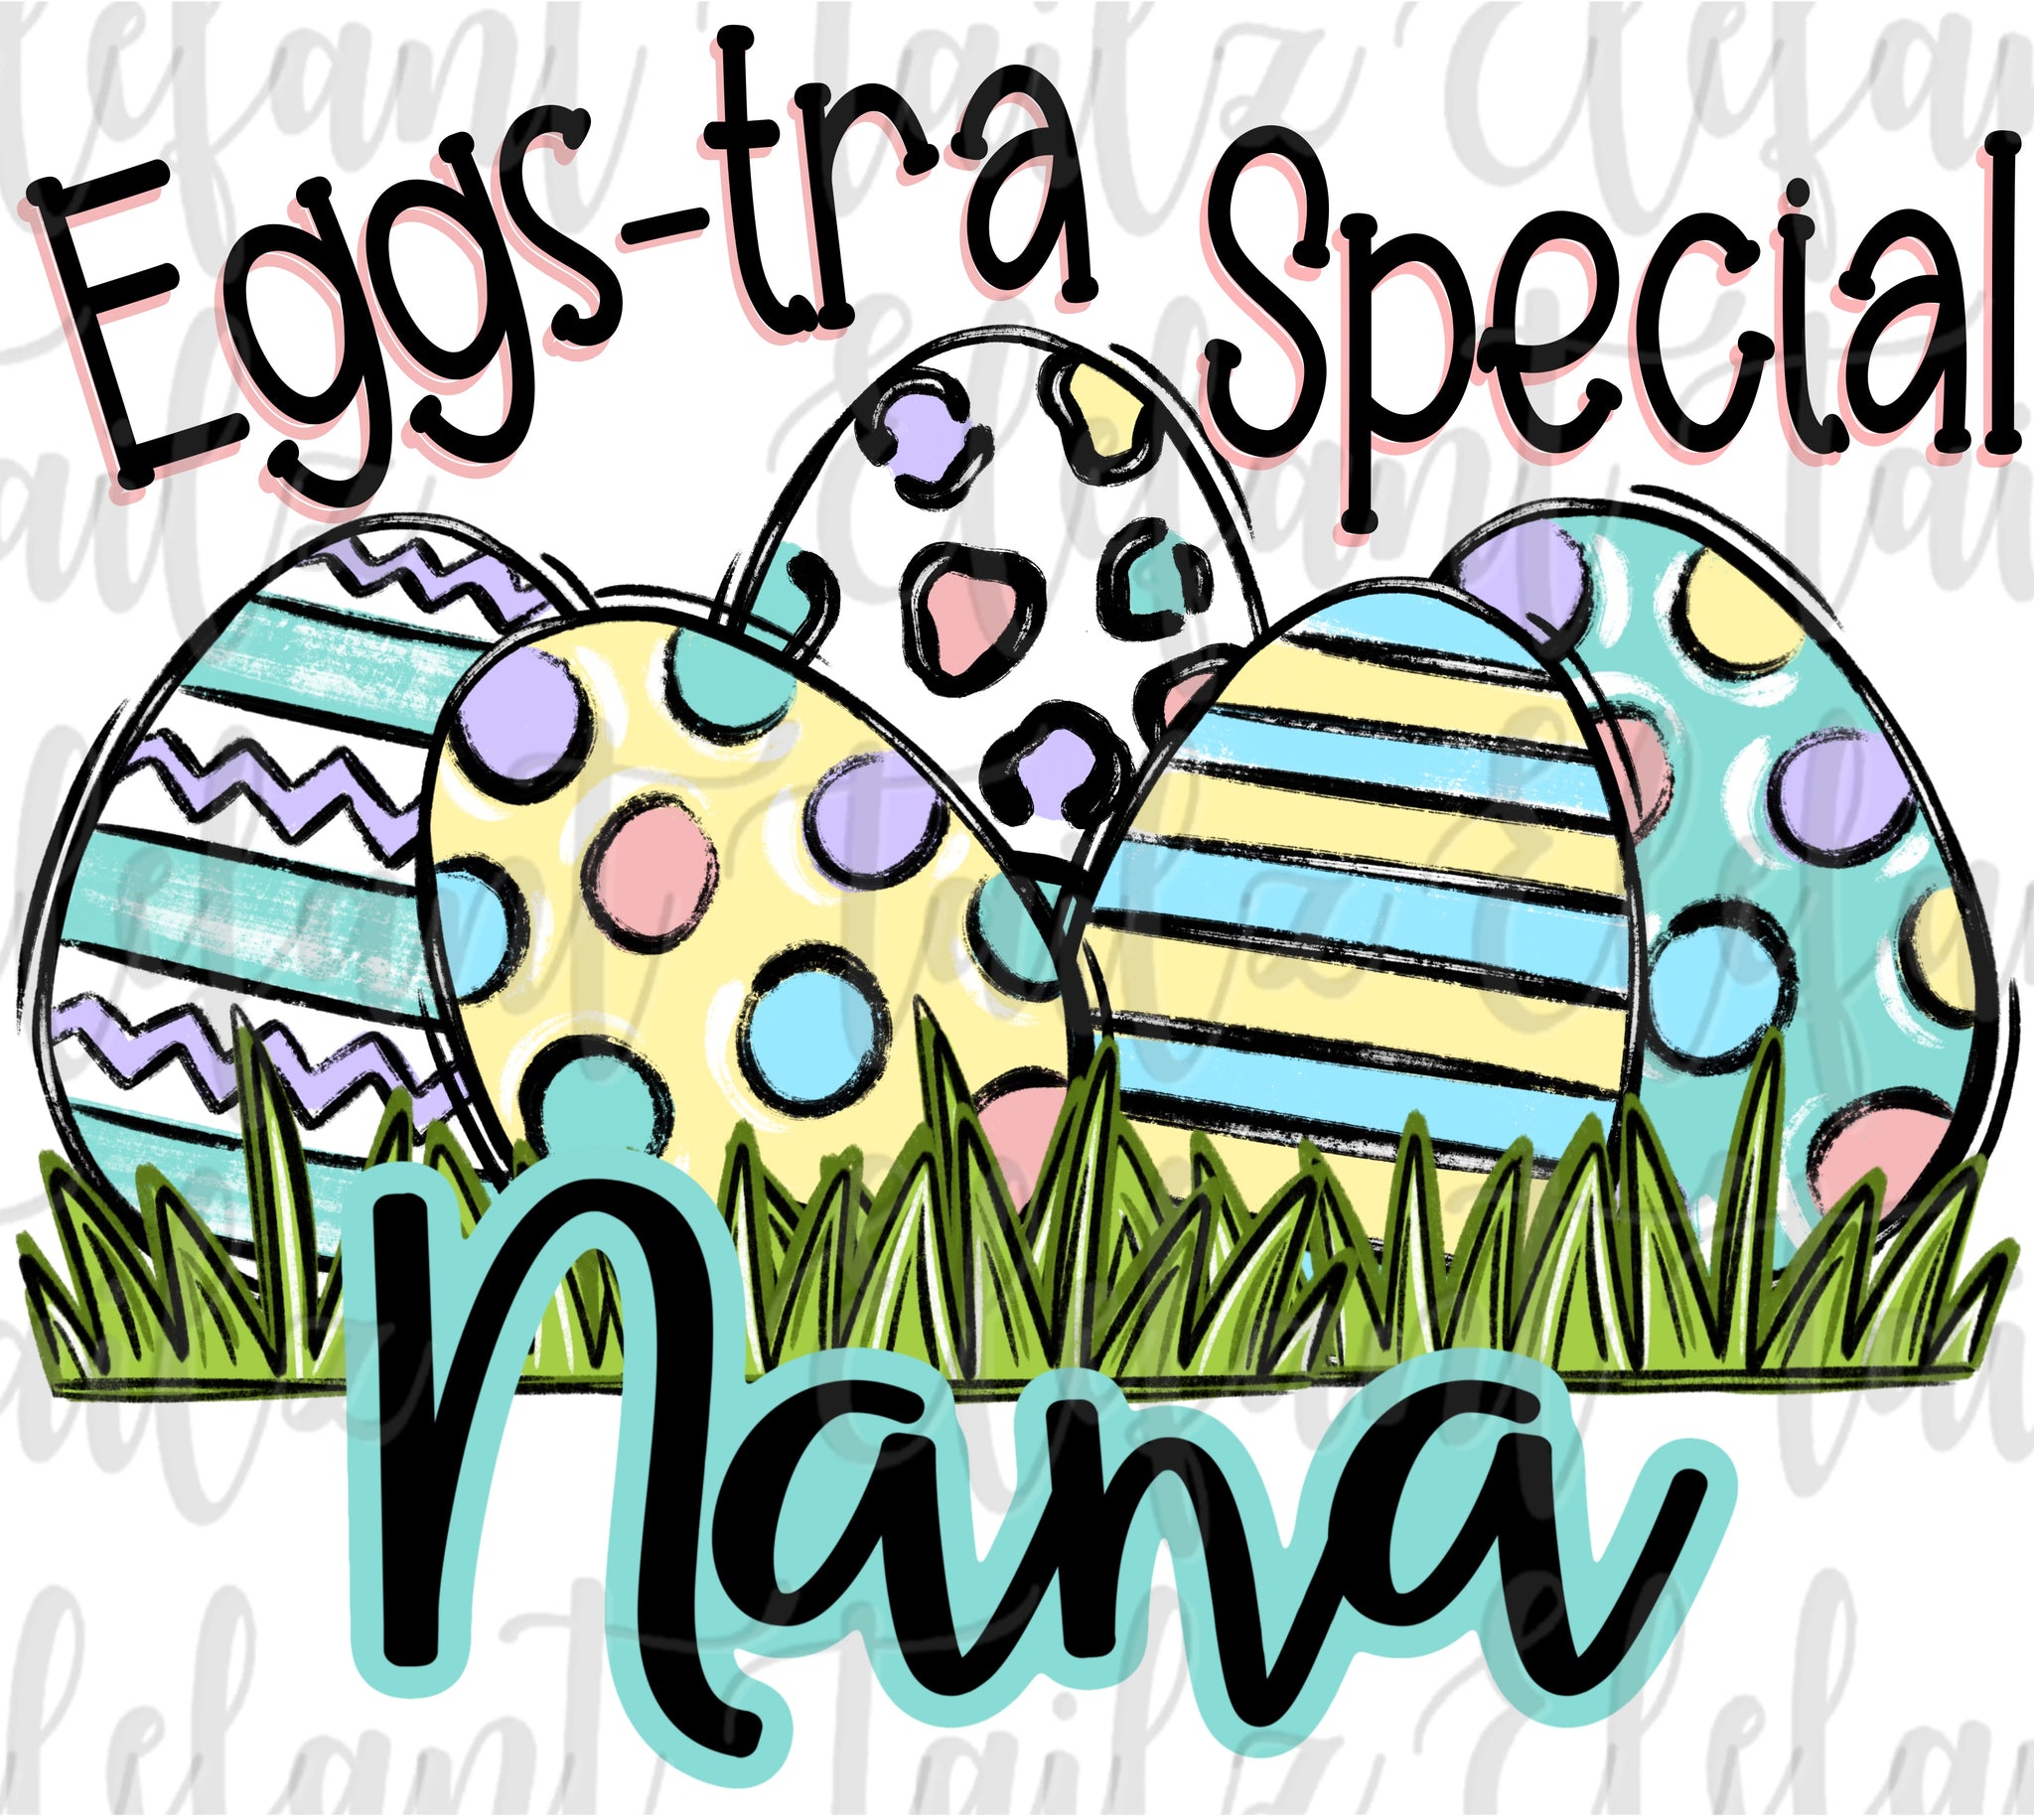 Eggs-tra Special Nana